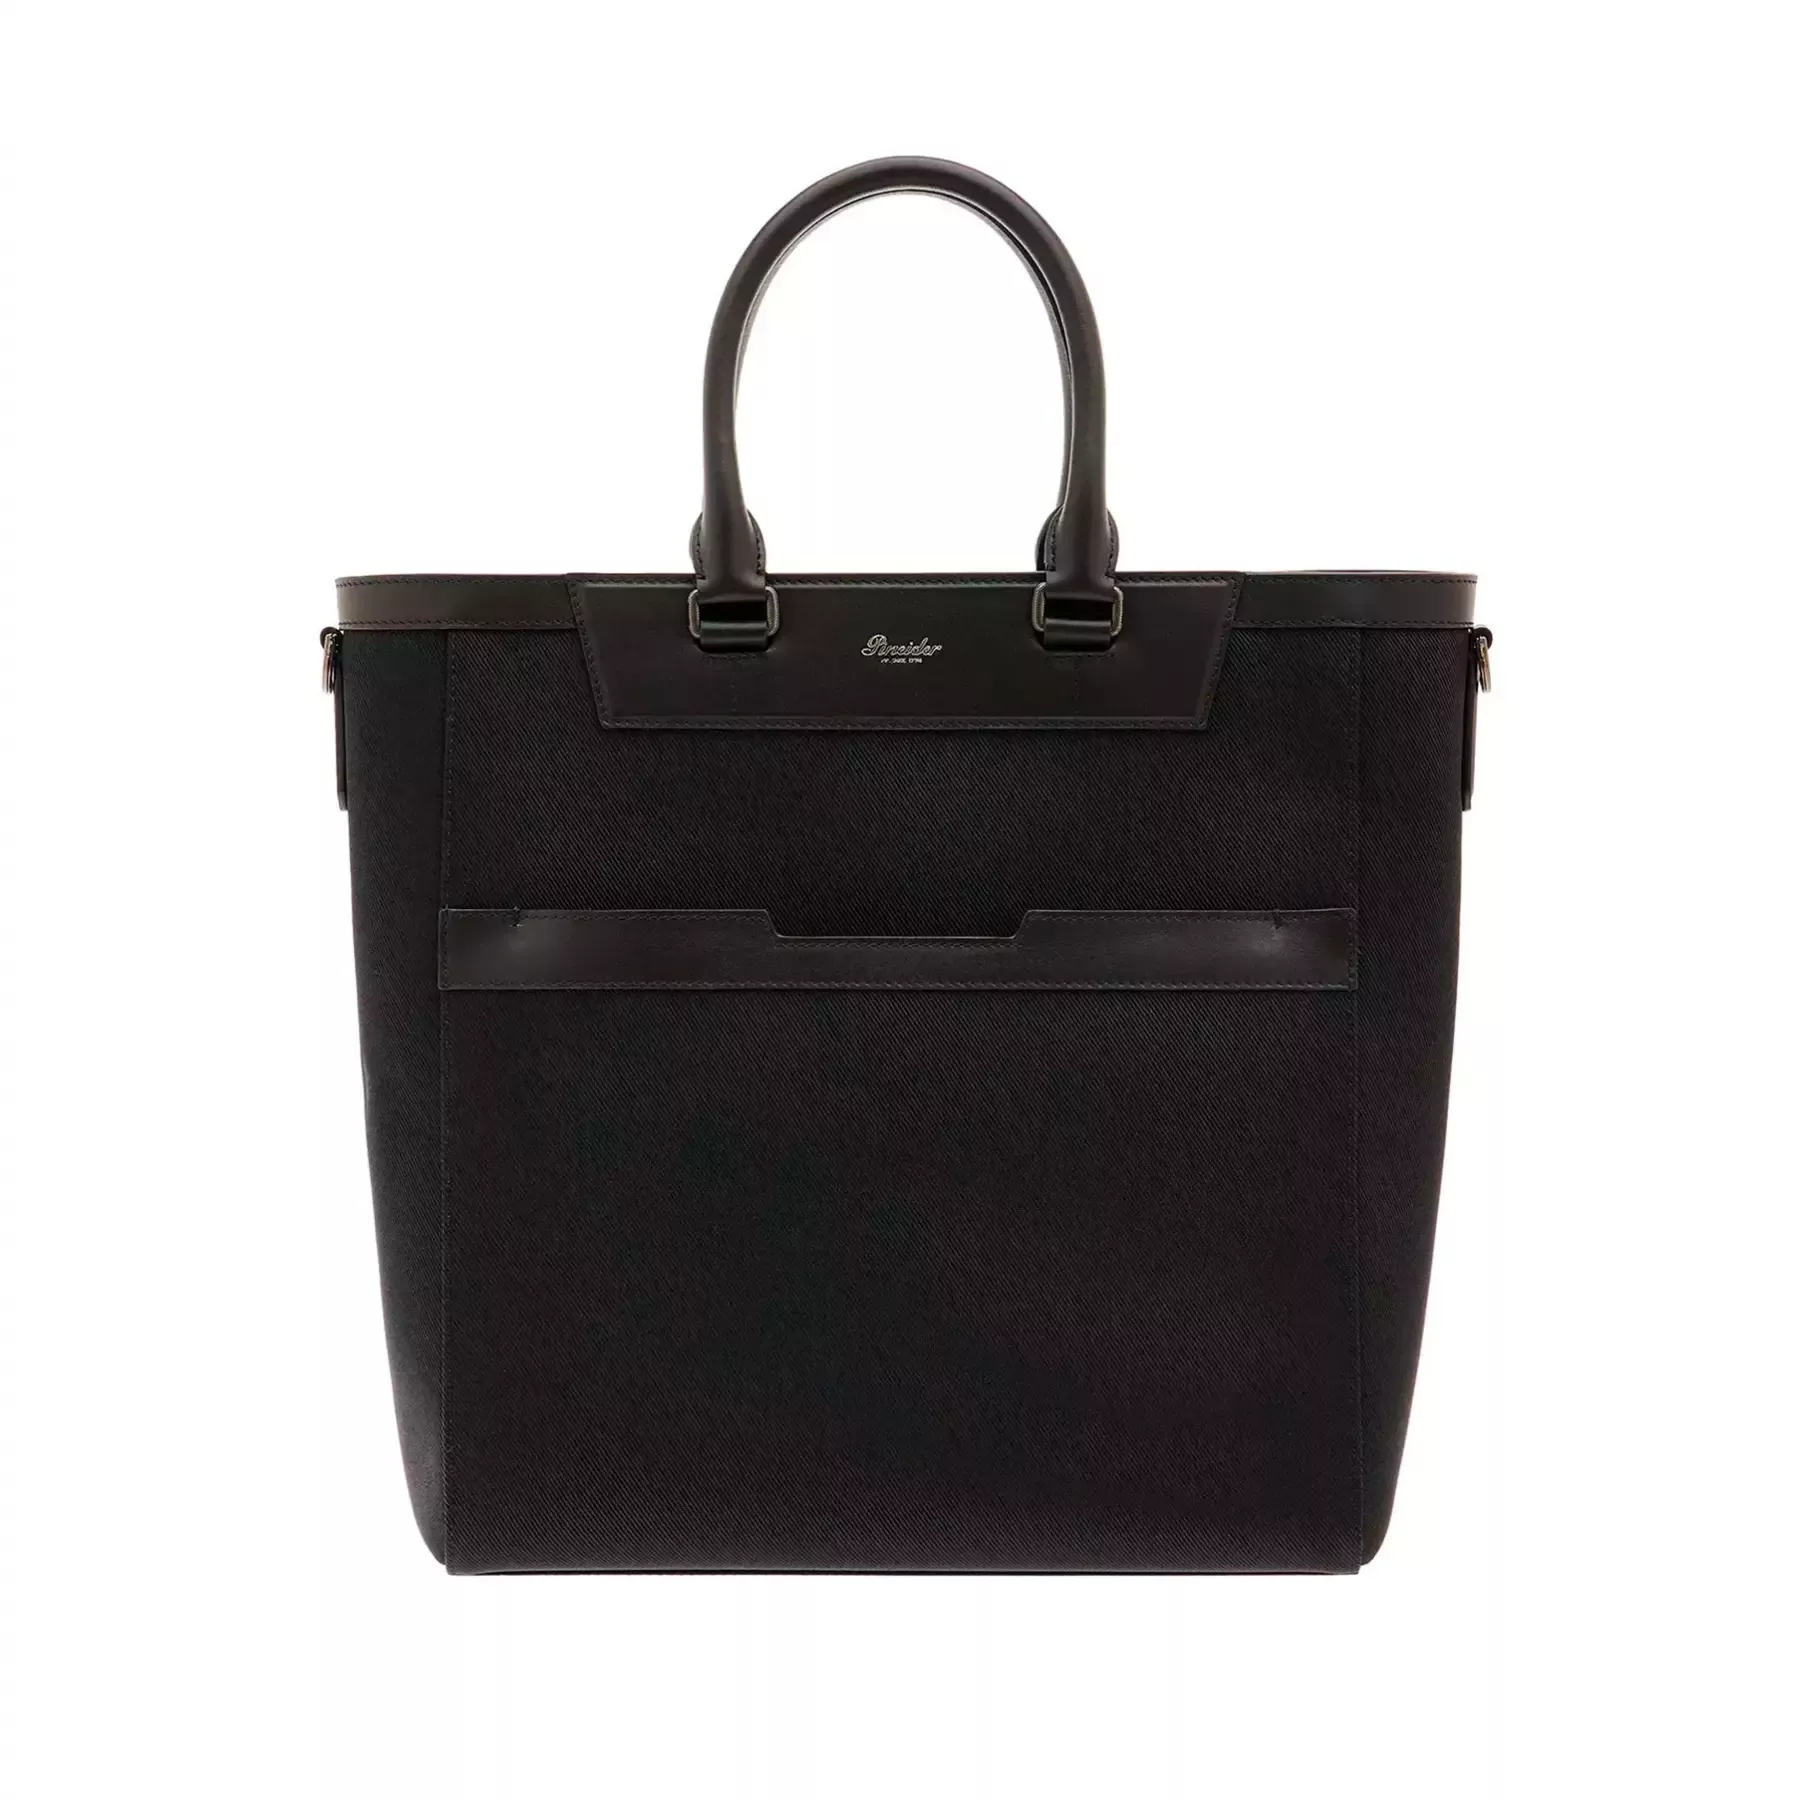 Medium Metro Box Tote Bag in Black Leather